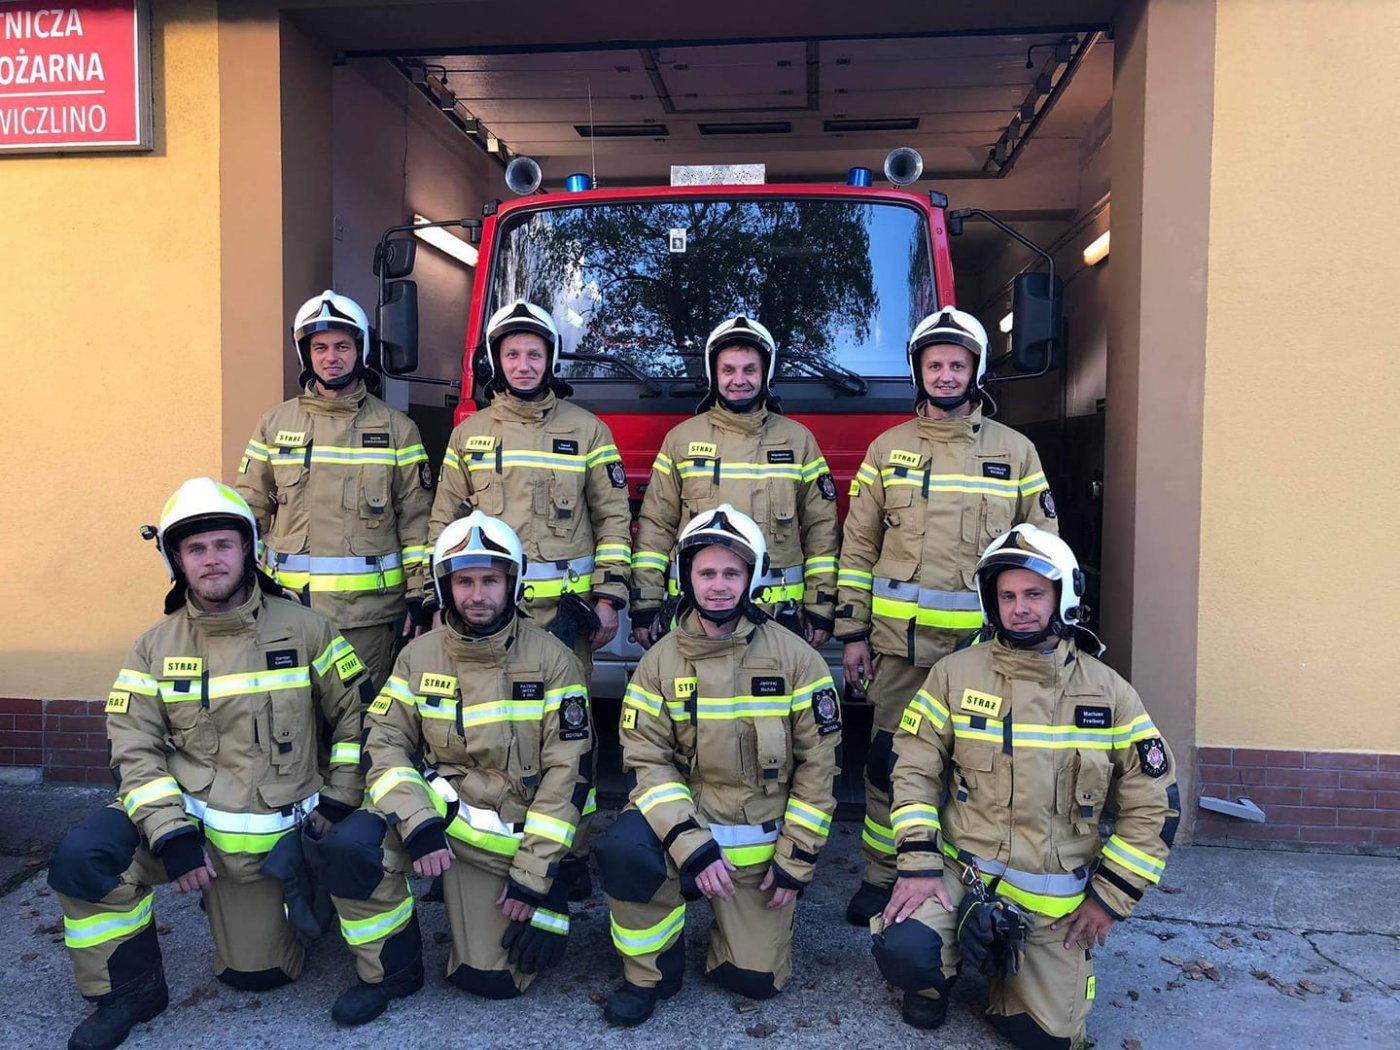 Ośmiu strażaków Ochotniczej Straży Pożarnej Wiczlino w nowym umundurowaniu, fot. OSP Wiczlino